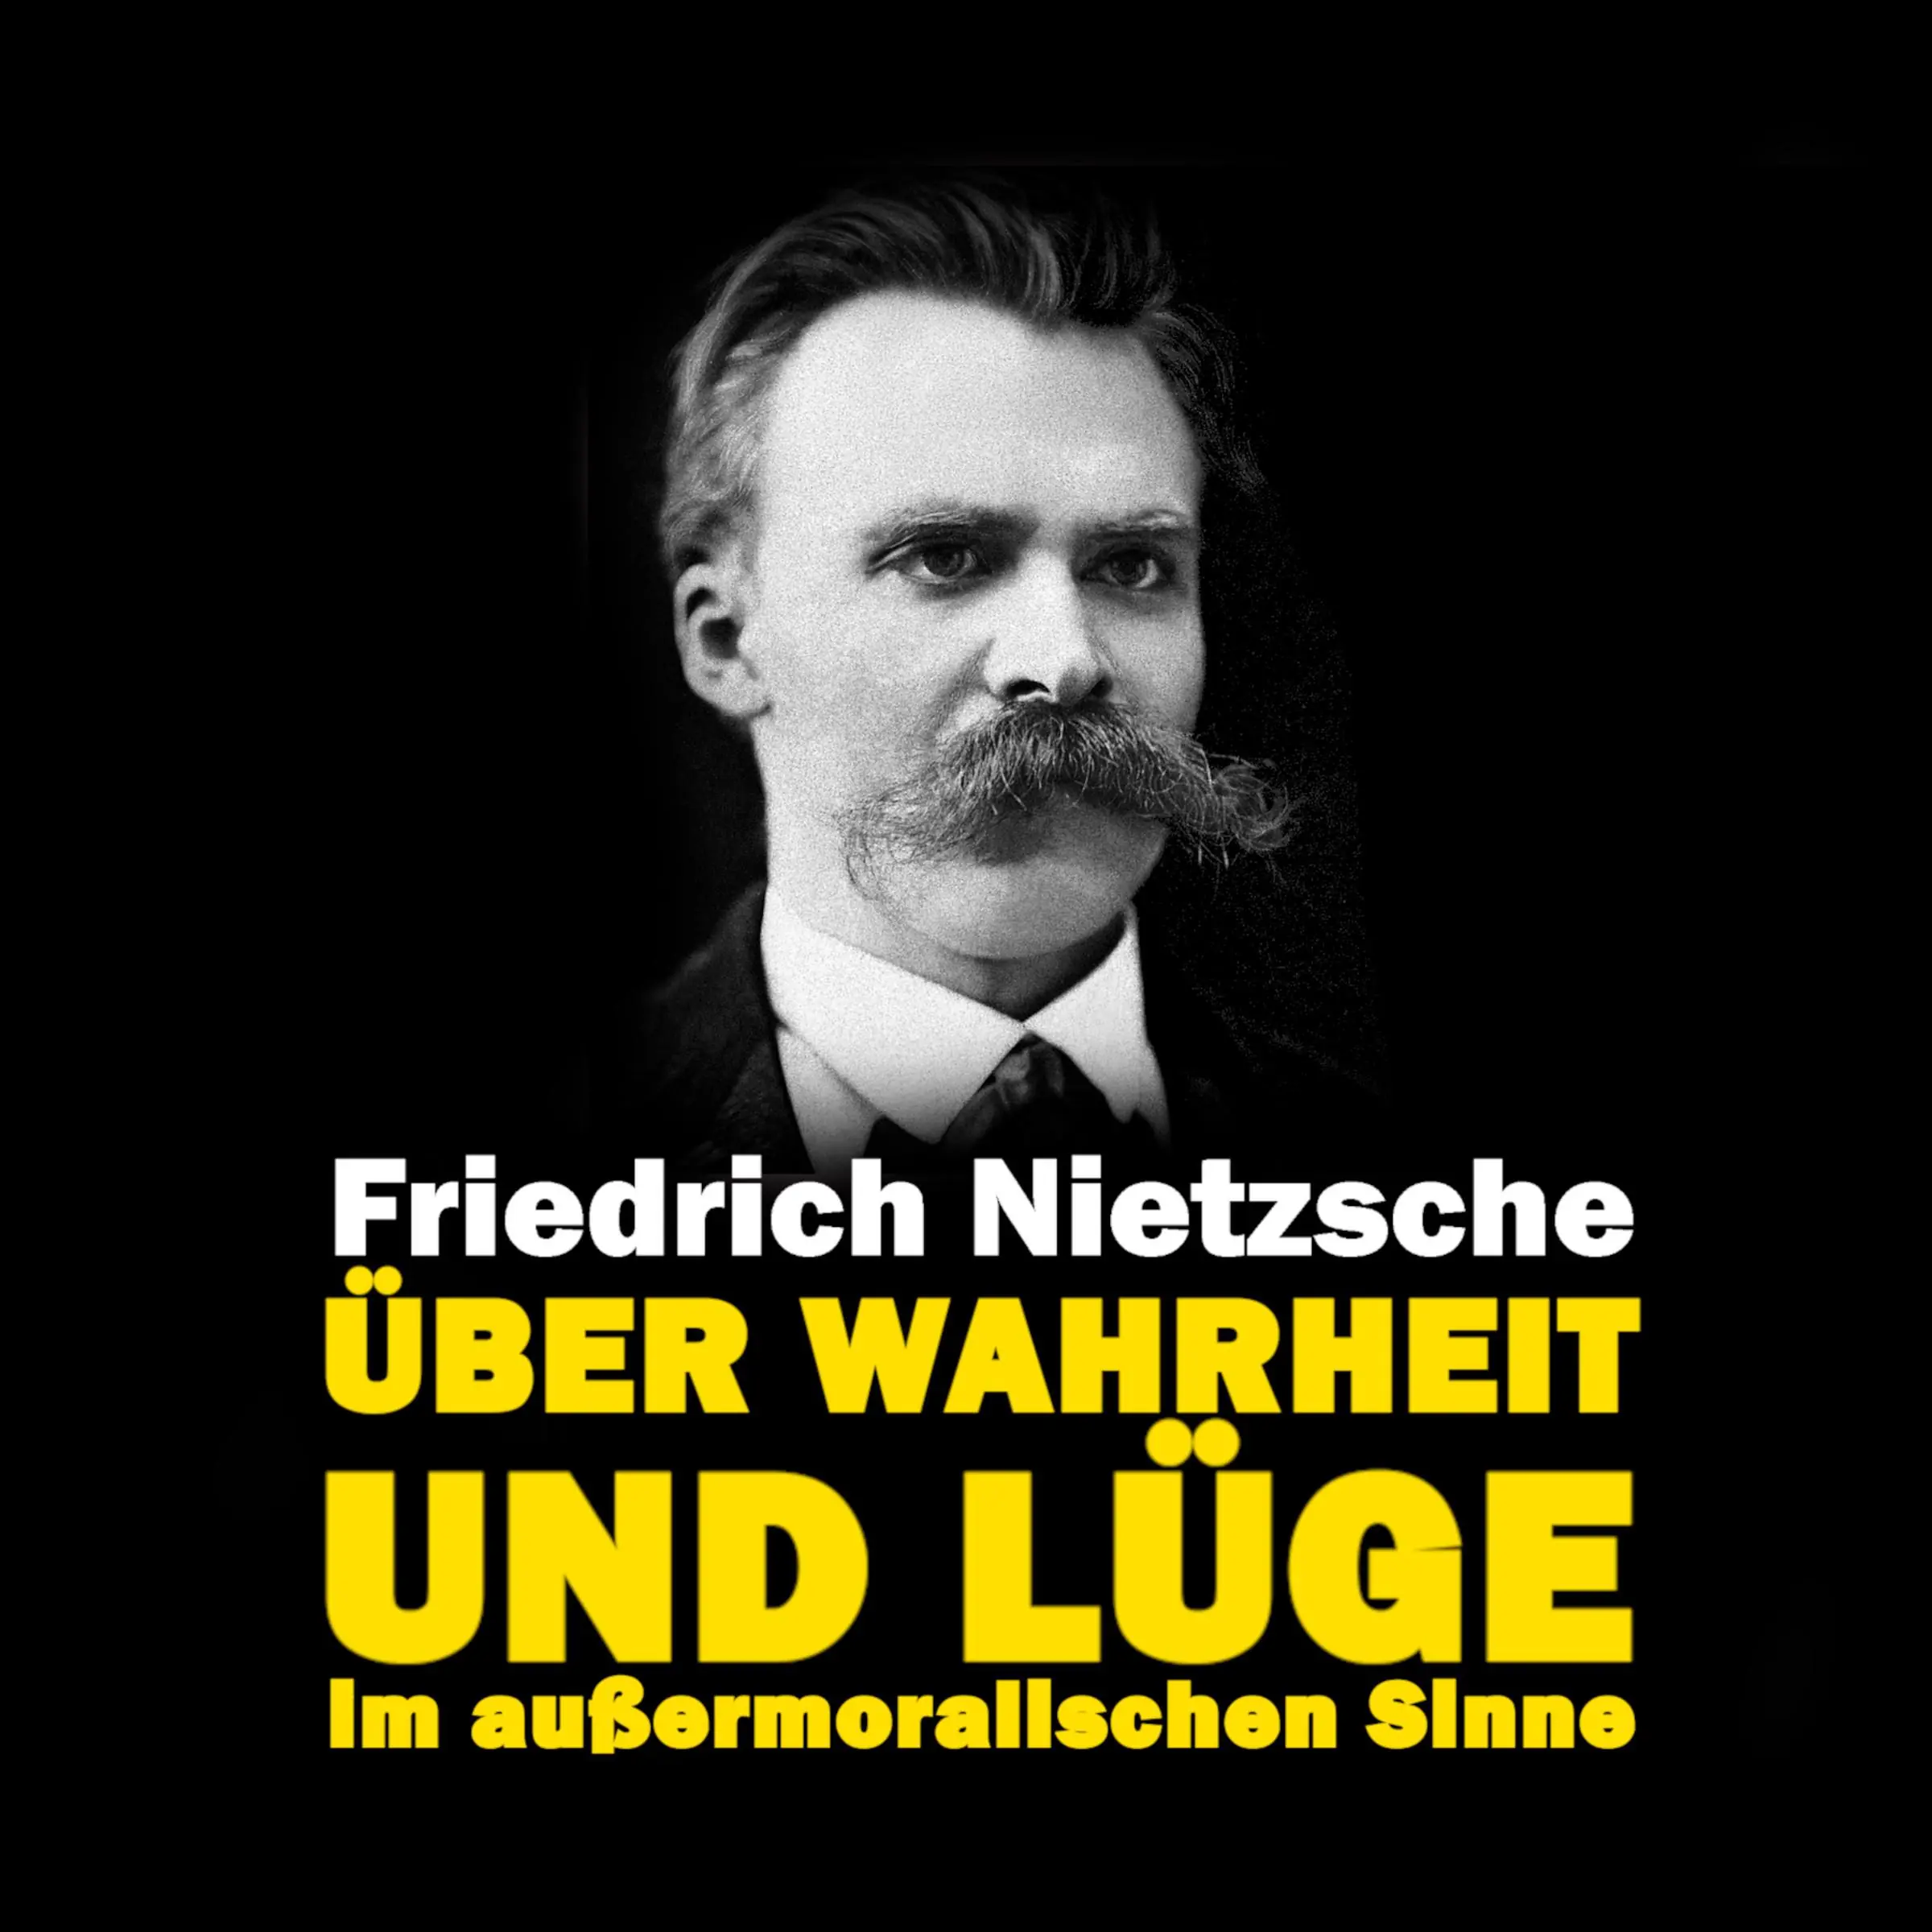 Über Wahrheit und Lüge im außermoralischen Sinne Audiobook by Friedrich Nietzsche